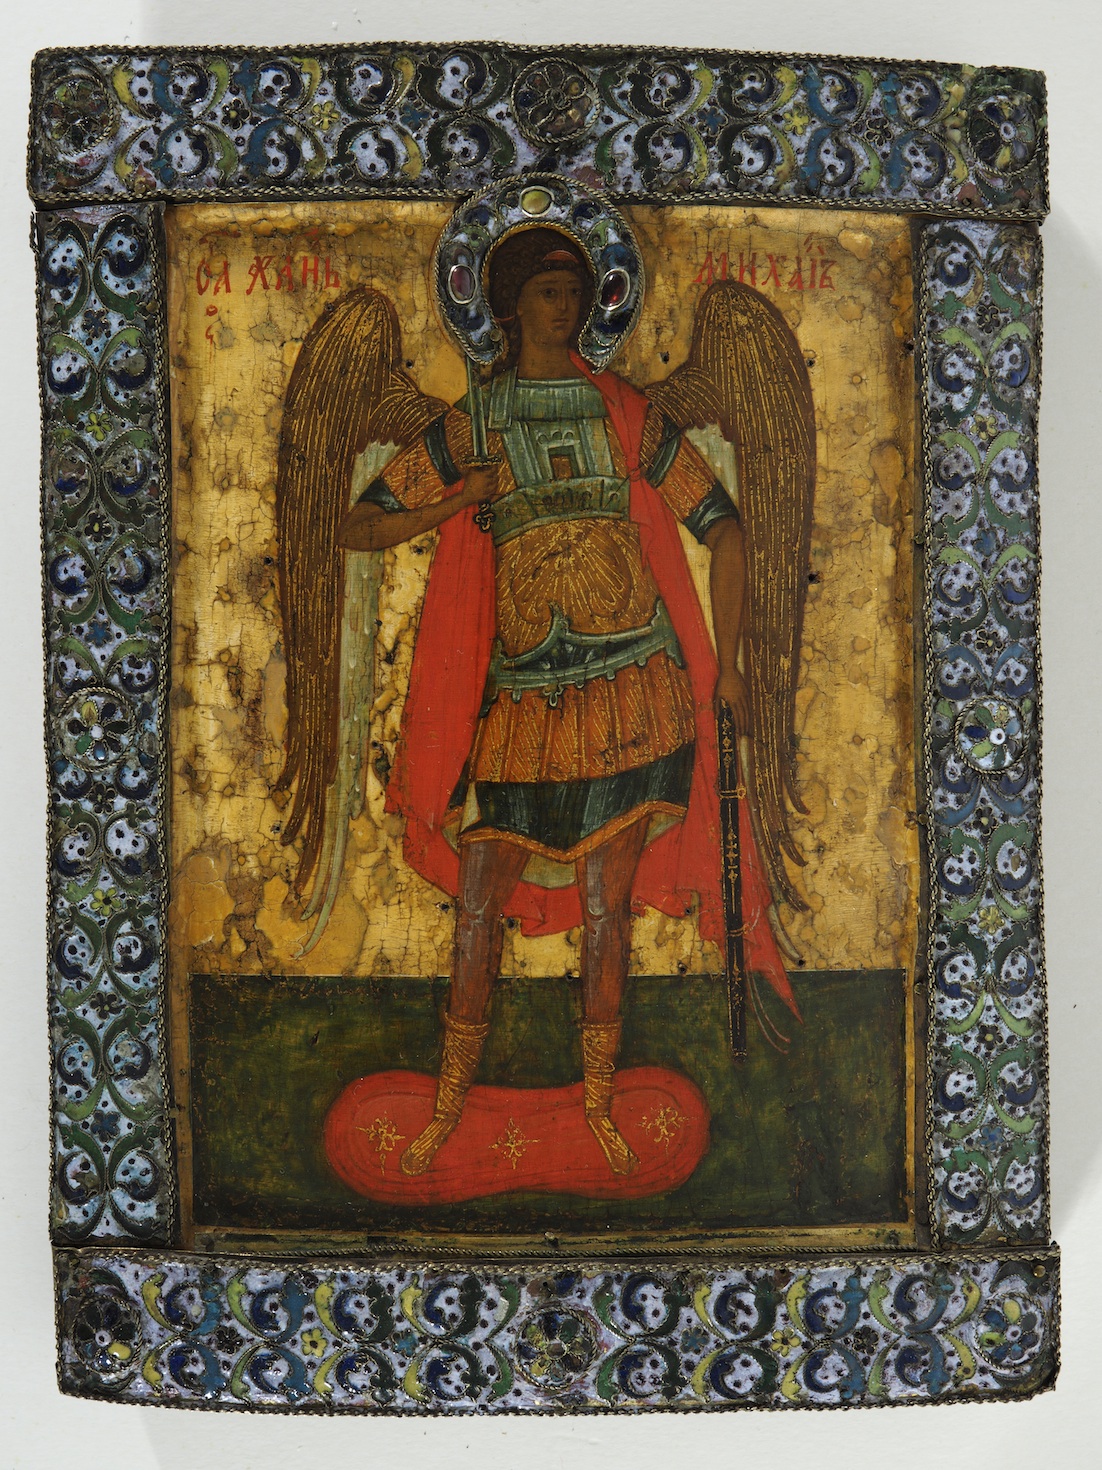 Ikone mit dem stehenden Erzengel Michael vor goldenem Hintergrund. Eitempera auf Holz, Russland, 16. Jahrhundert